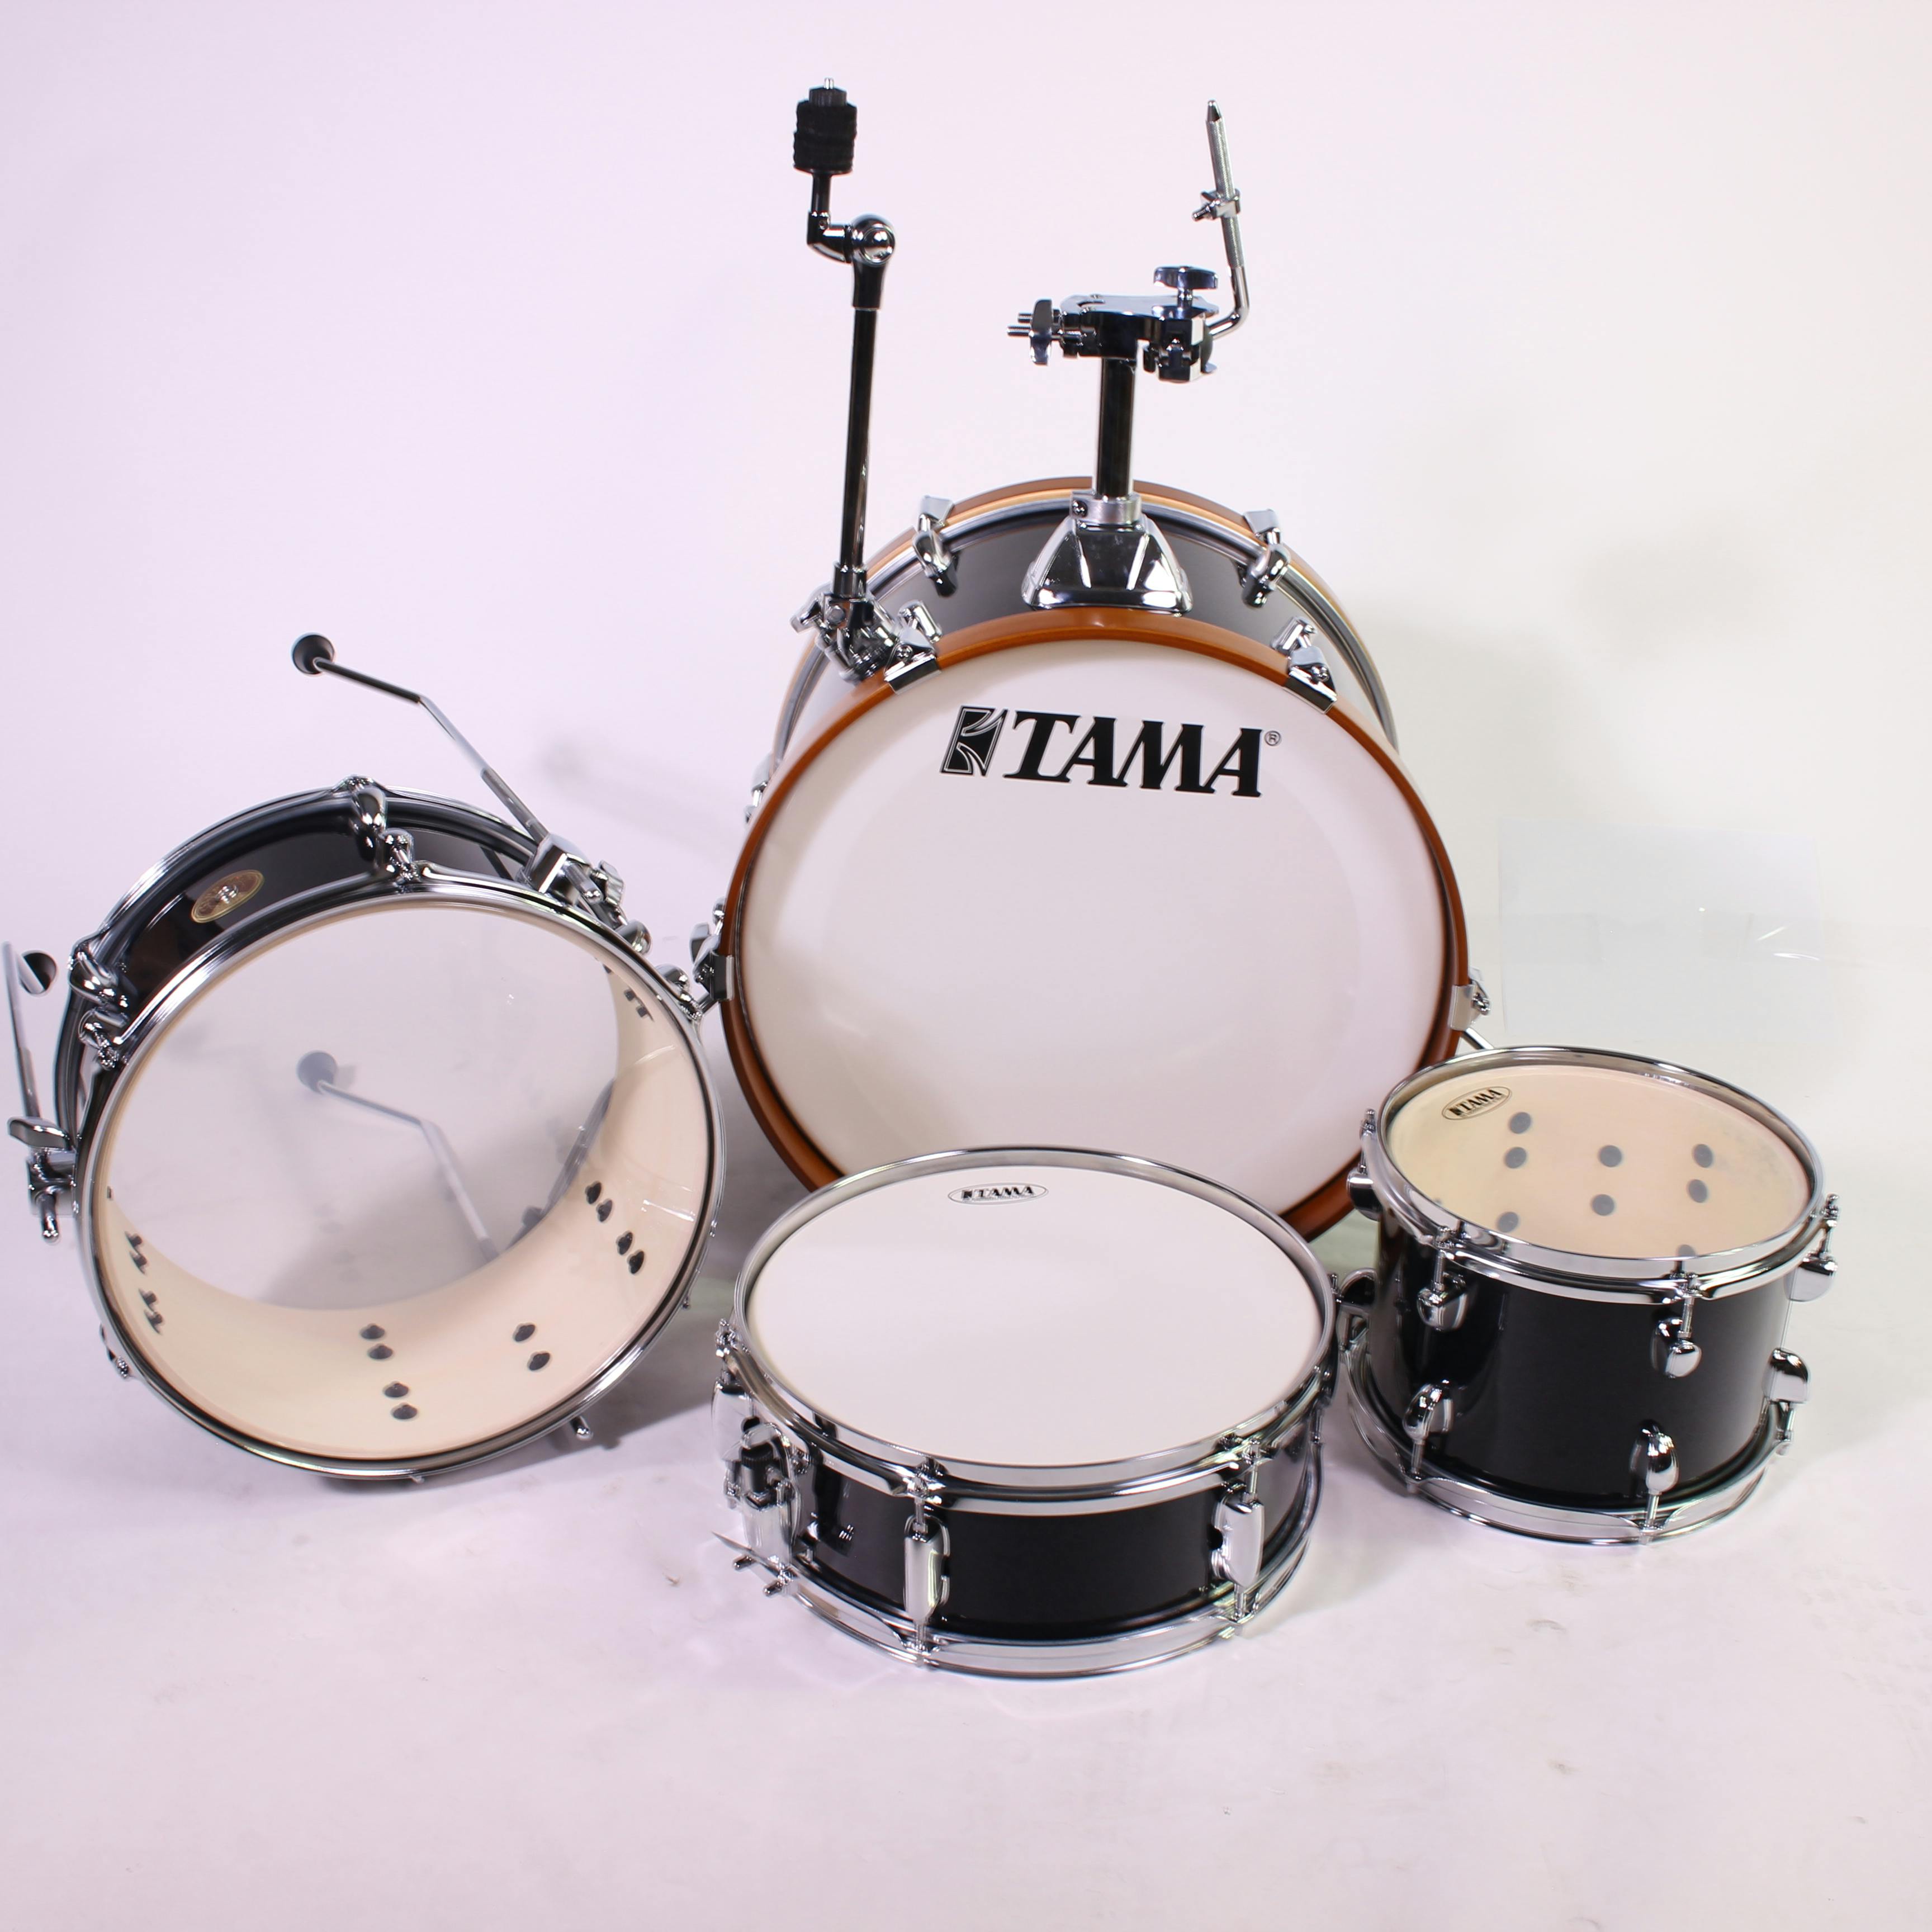 New TAMA CLUB JAM LJK48SCCM CHARCOAL MIST Drum Kits